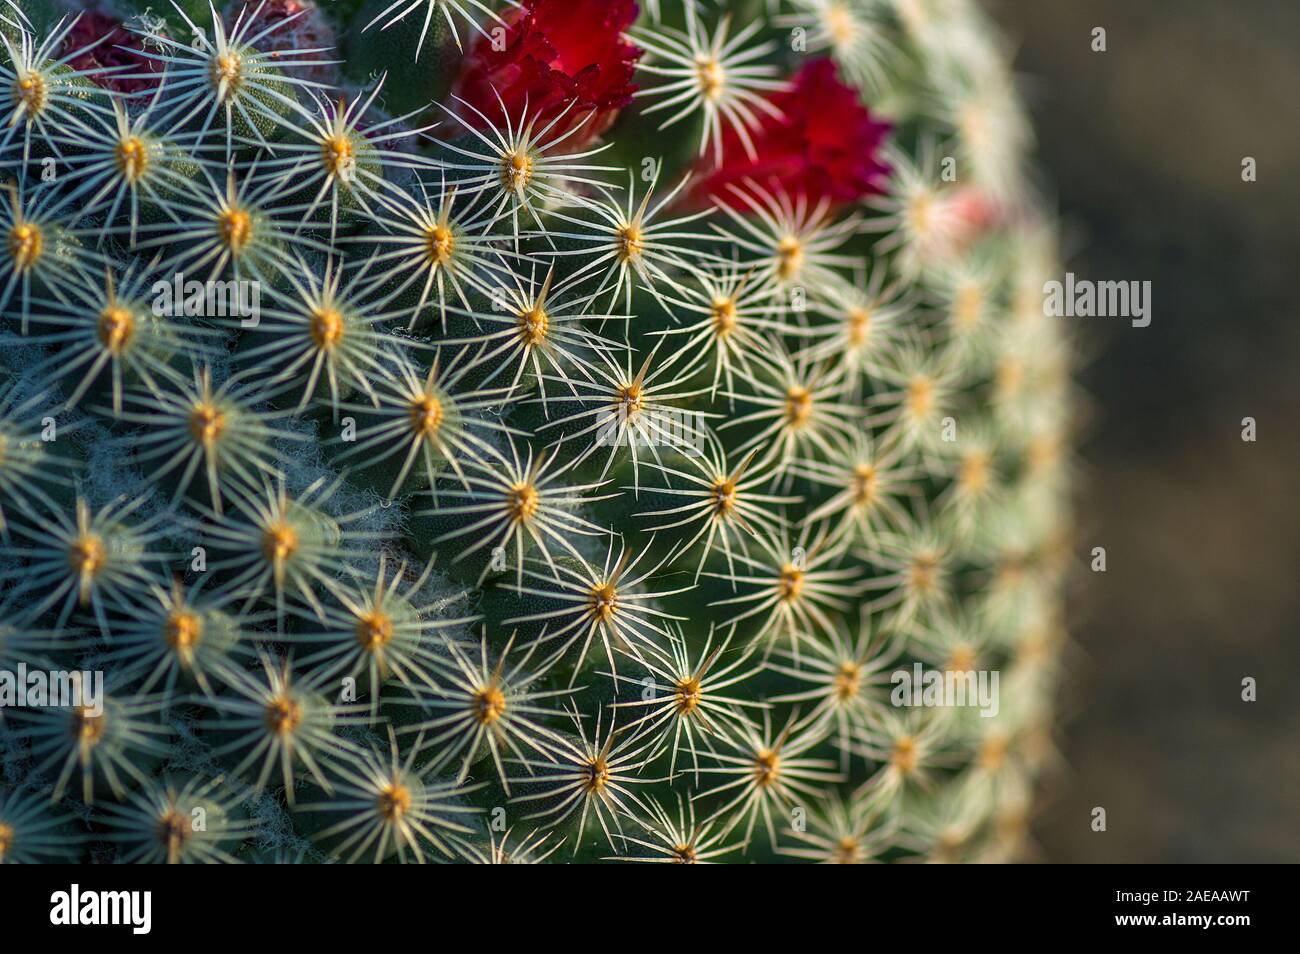 closeup of Cactus plant in park Stock Photo